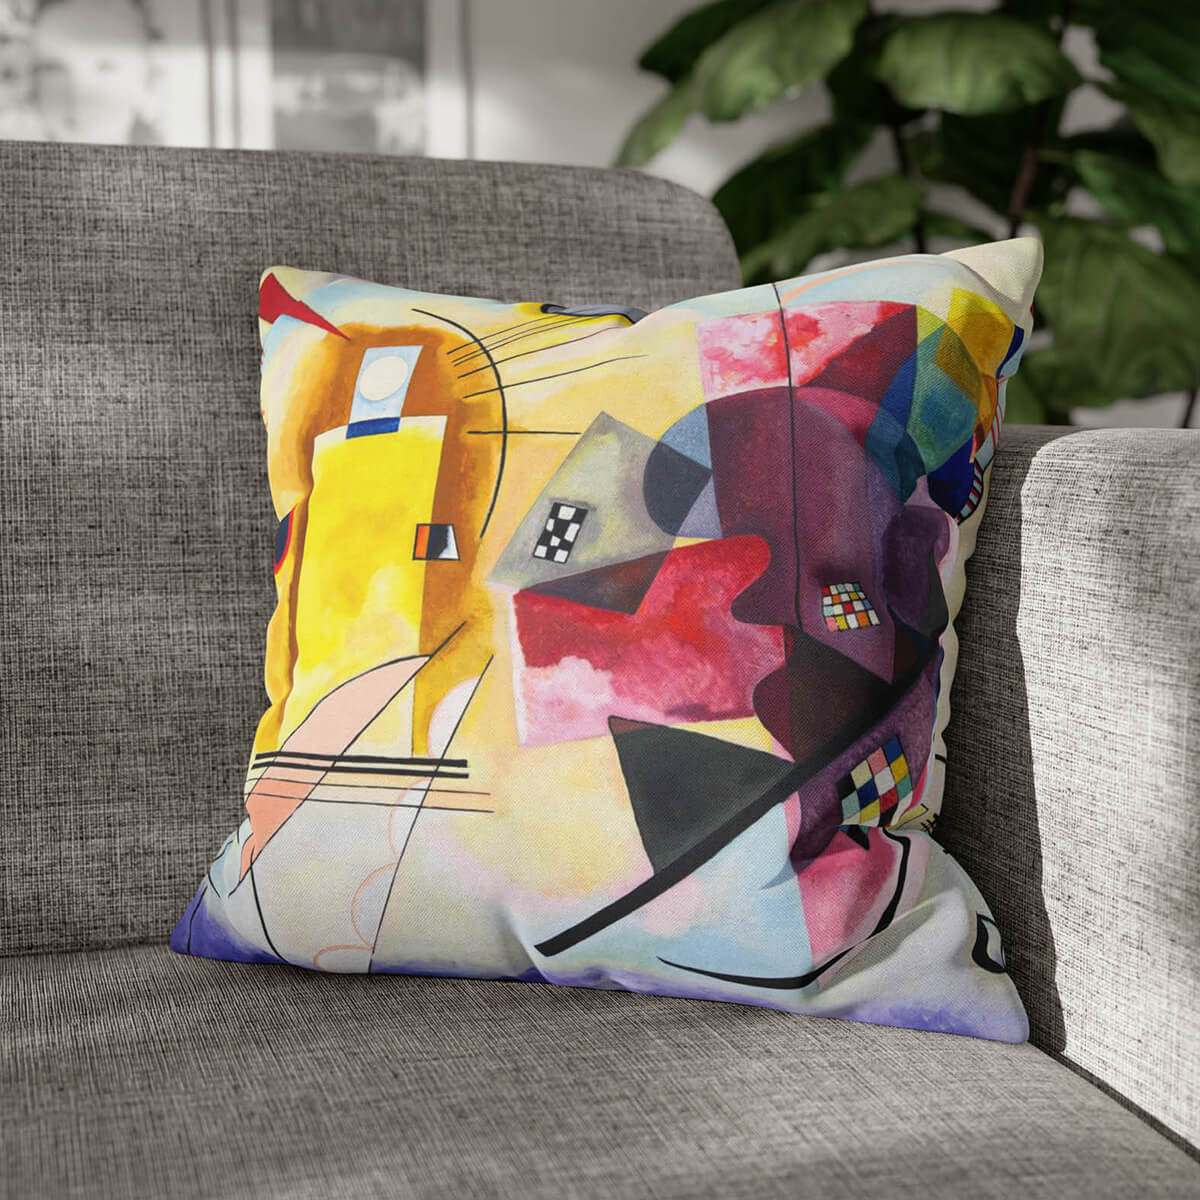 Unique Art Inspired Sofa Cushion - Interior Design Element